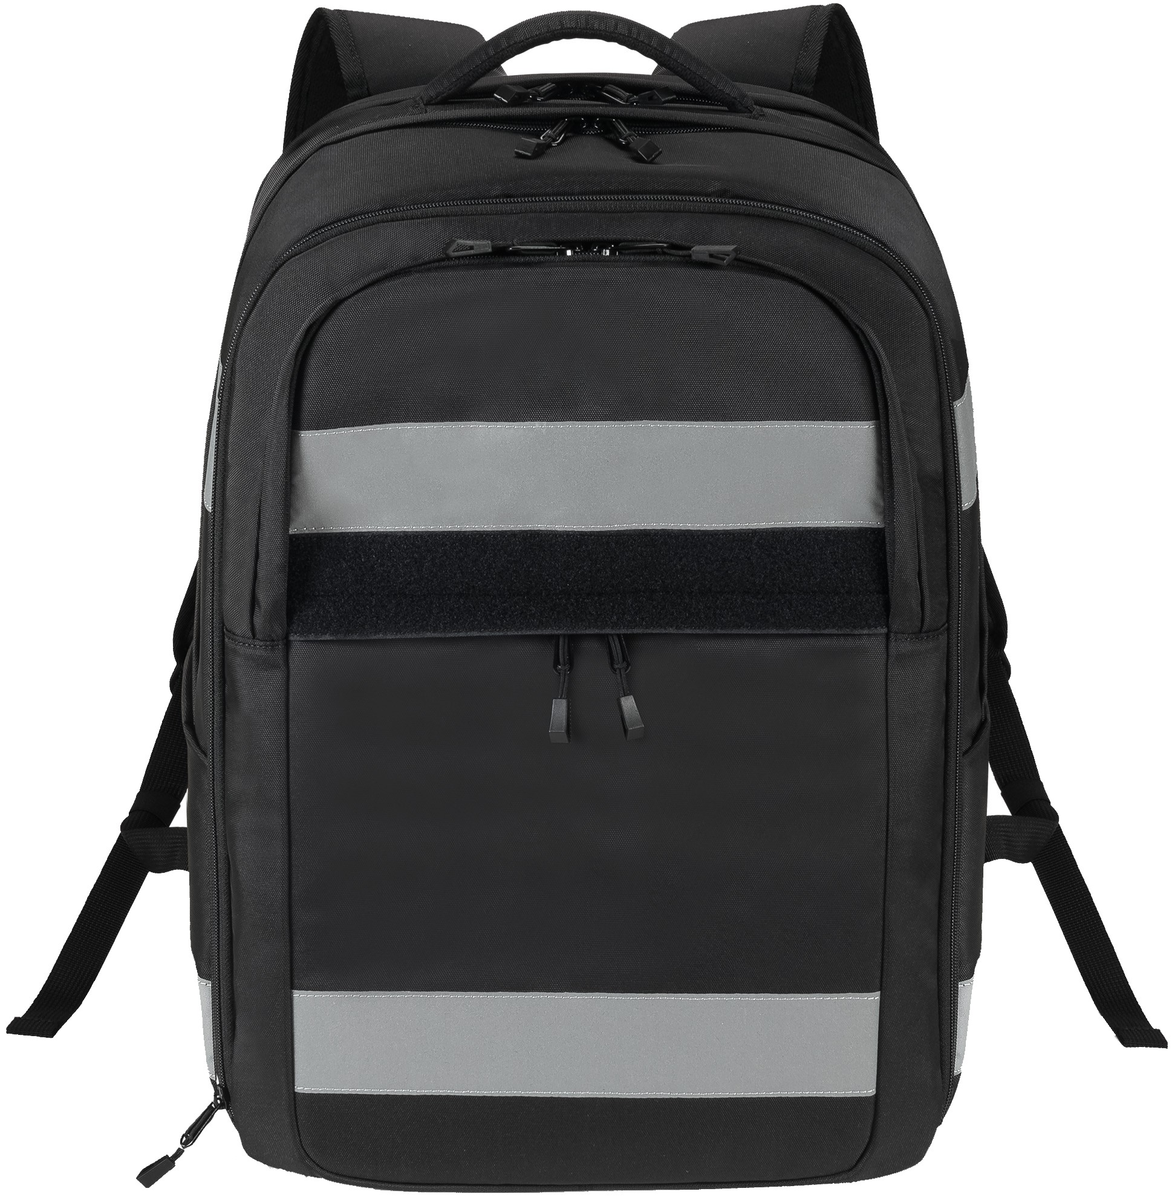 DICOTA Eco BASE sac à dos pour ordinateur portable (D30913-RPET)